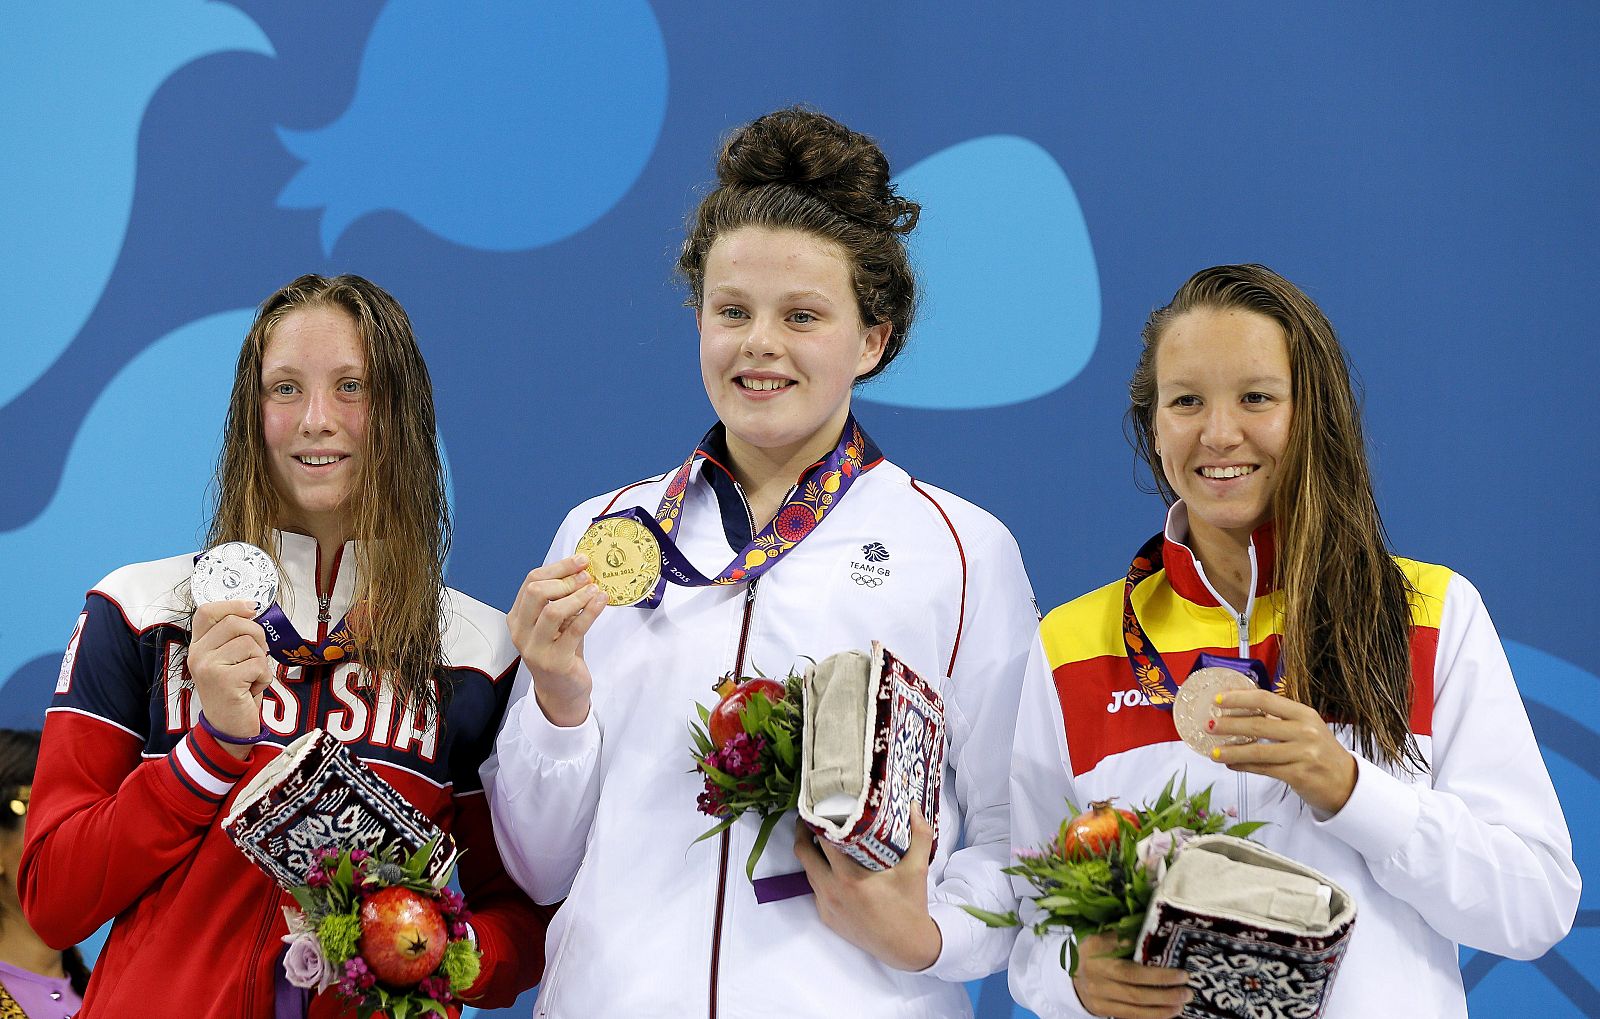 La británica Holly Hibbott (c, oro) posa en el podio junto a la rusa Anastasiia Kirpichnikova (i, plata), y la española Marina Castro Atalaya (d, bronce), tras competir en la prueba de 800 metros.